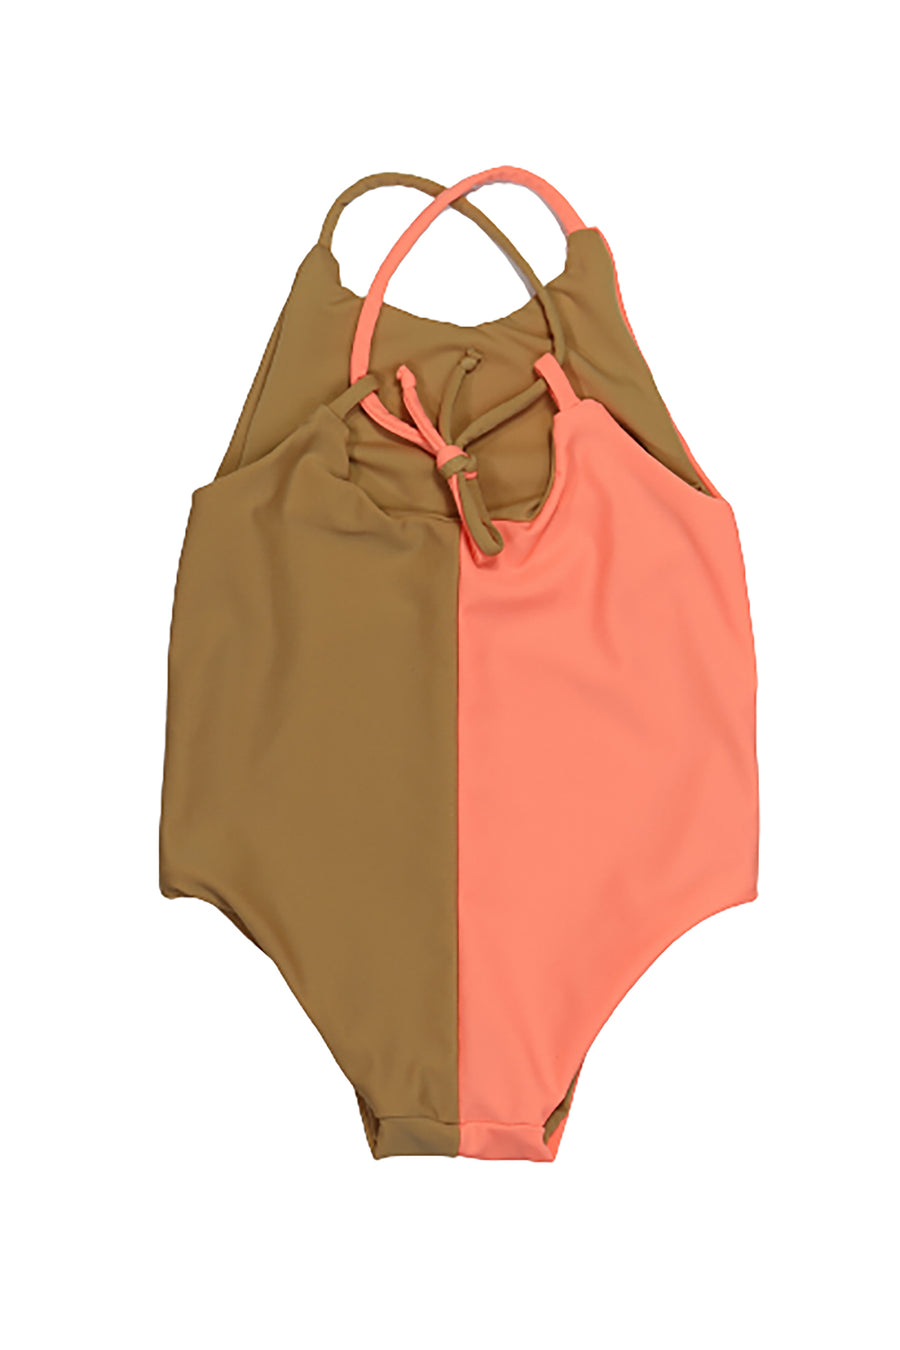 CELYNE  swimsuit  Neon pink - HOLY SHE - HOWTOKiSSAFROG